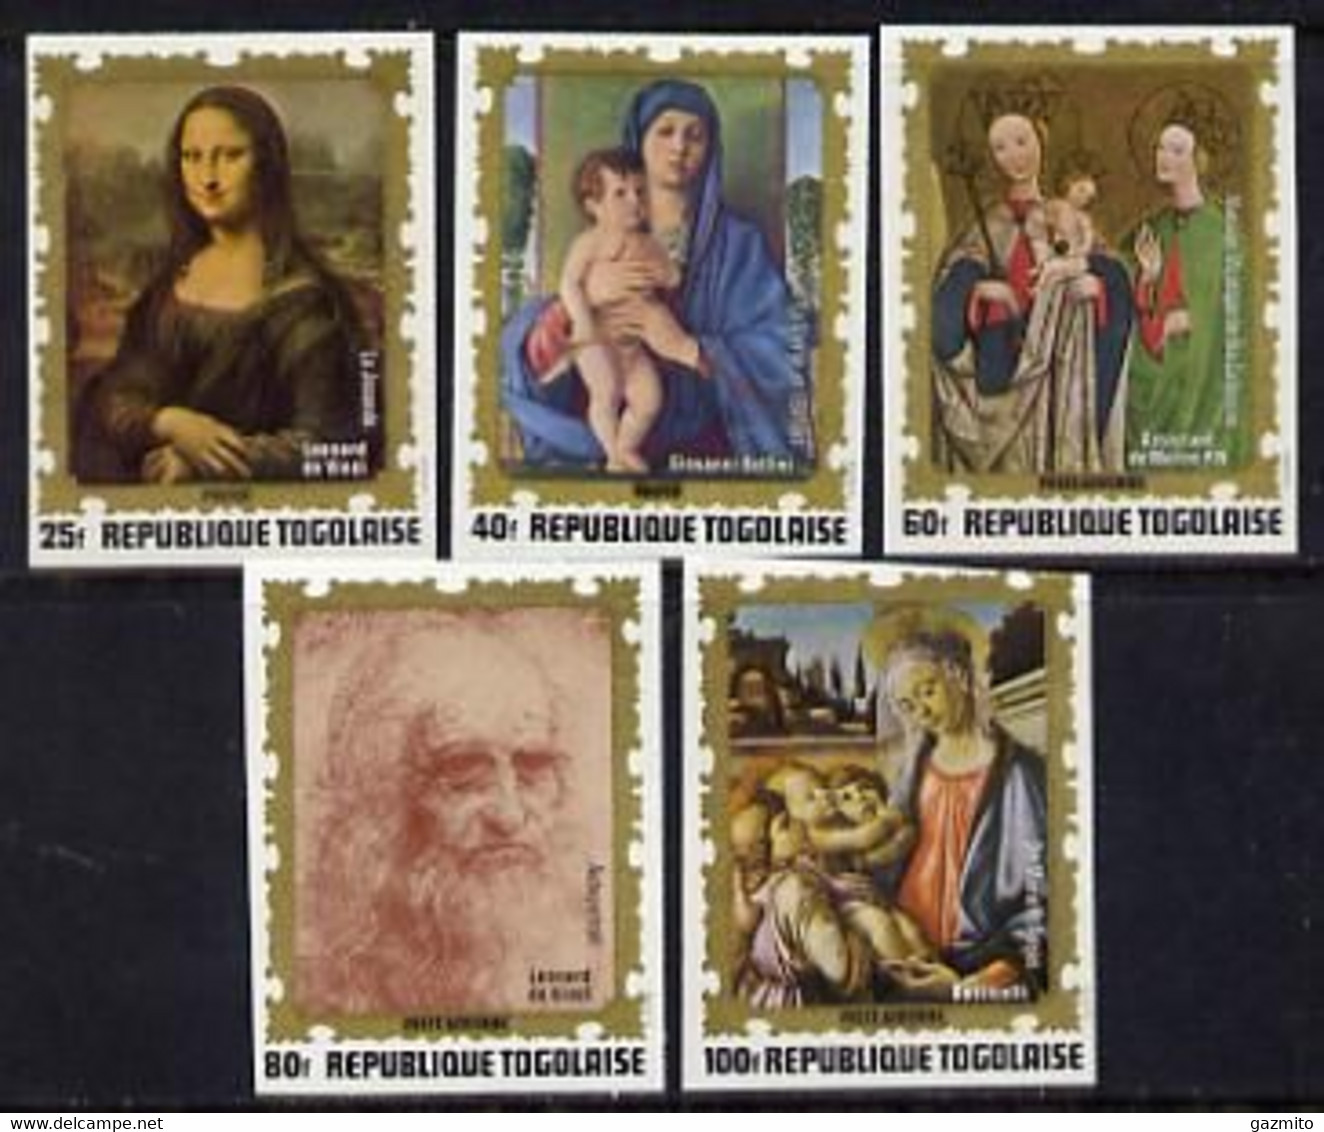 Togo 1972, Paintings Of Italian Masters, Leonardo, Botticelli, Bellini, 5val IMPERFORATED - Quadri